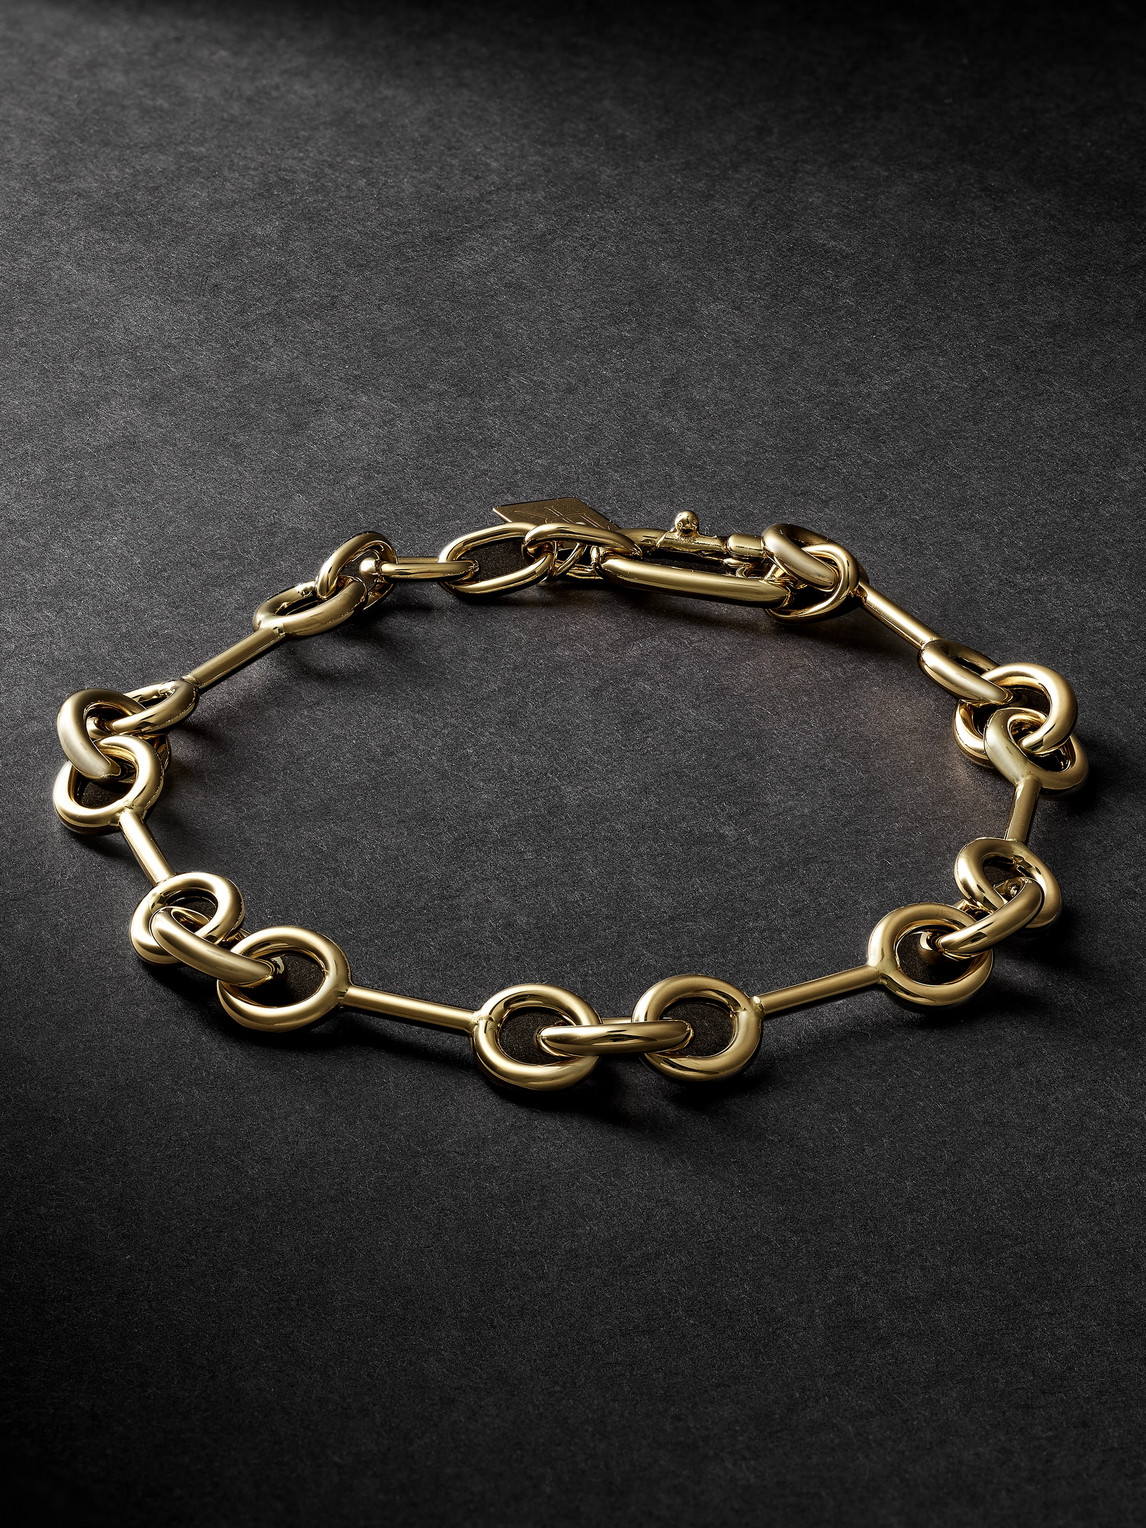 Lauren Rubinski Gold Bracelet